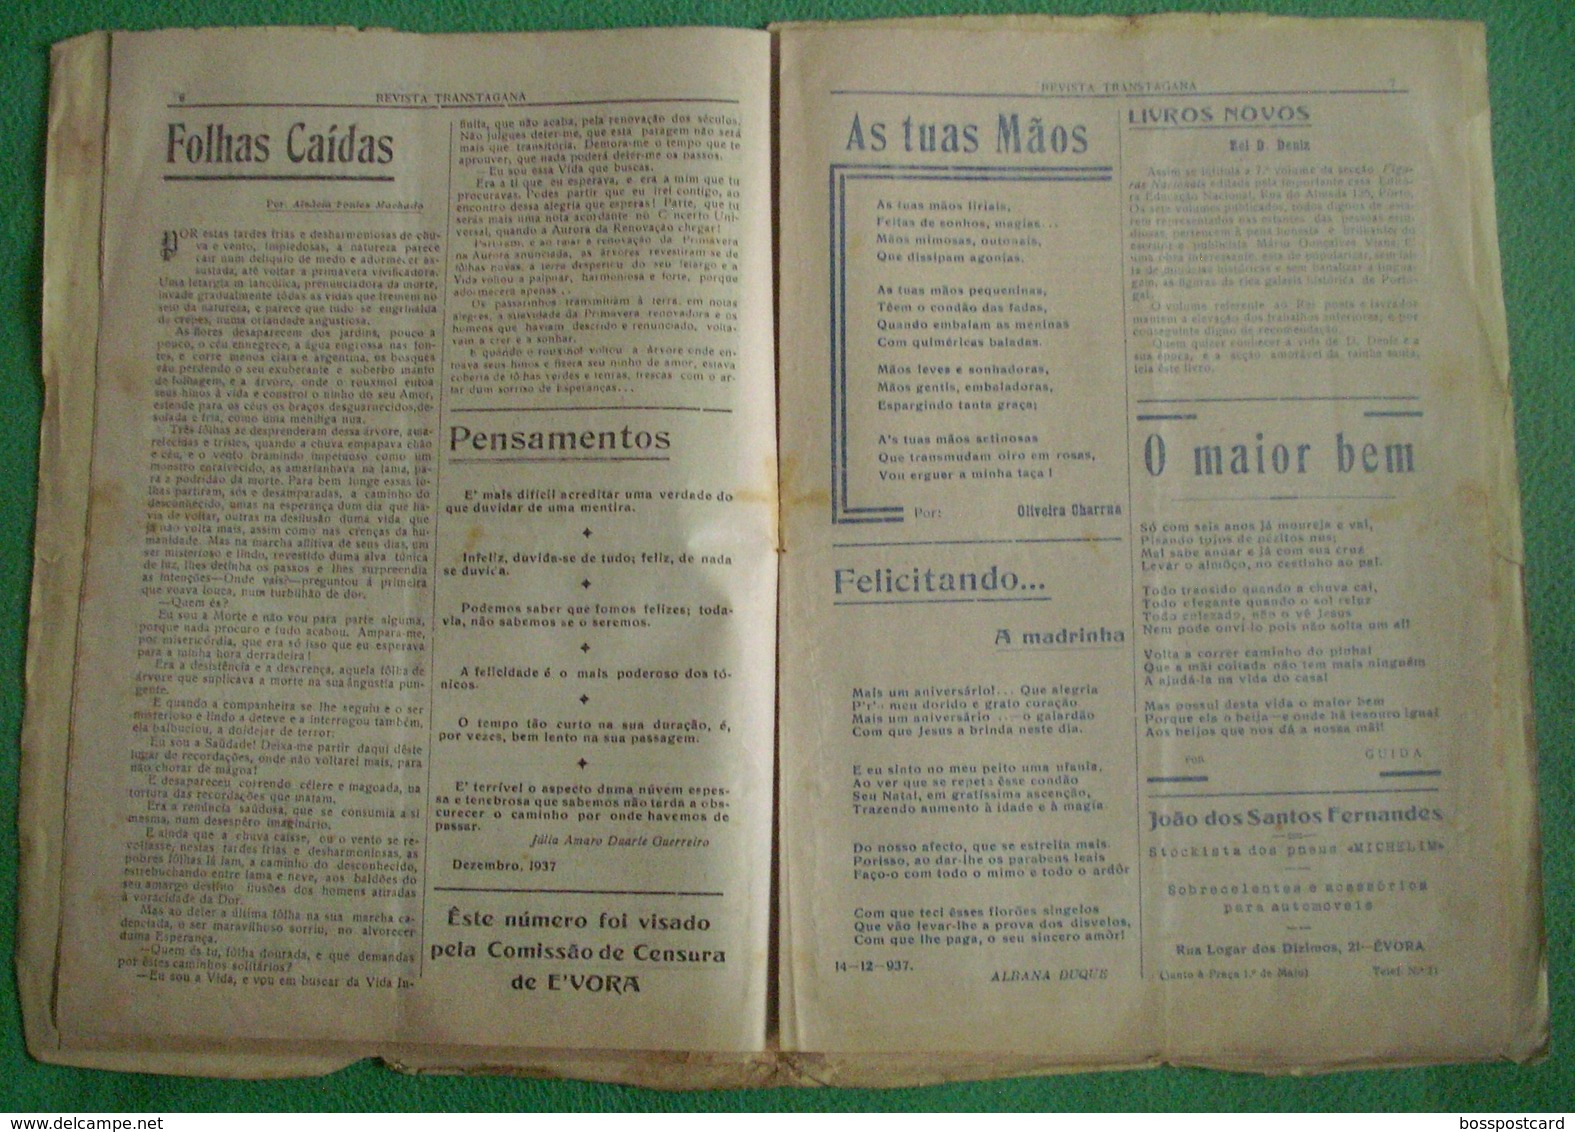 Évora - "Revista Transtagana" Nº 46 De 1938 - Jornal - Imprensa - Publicidade - Algemene Informatie